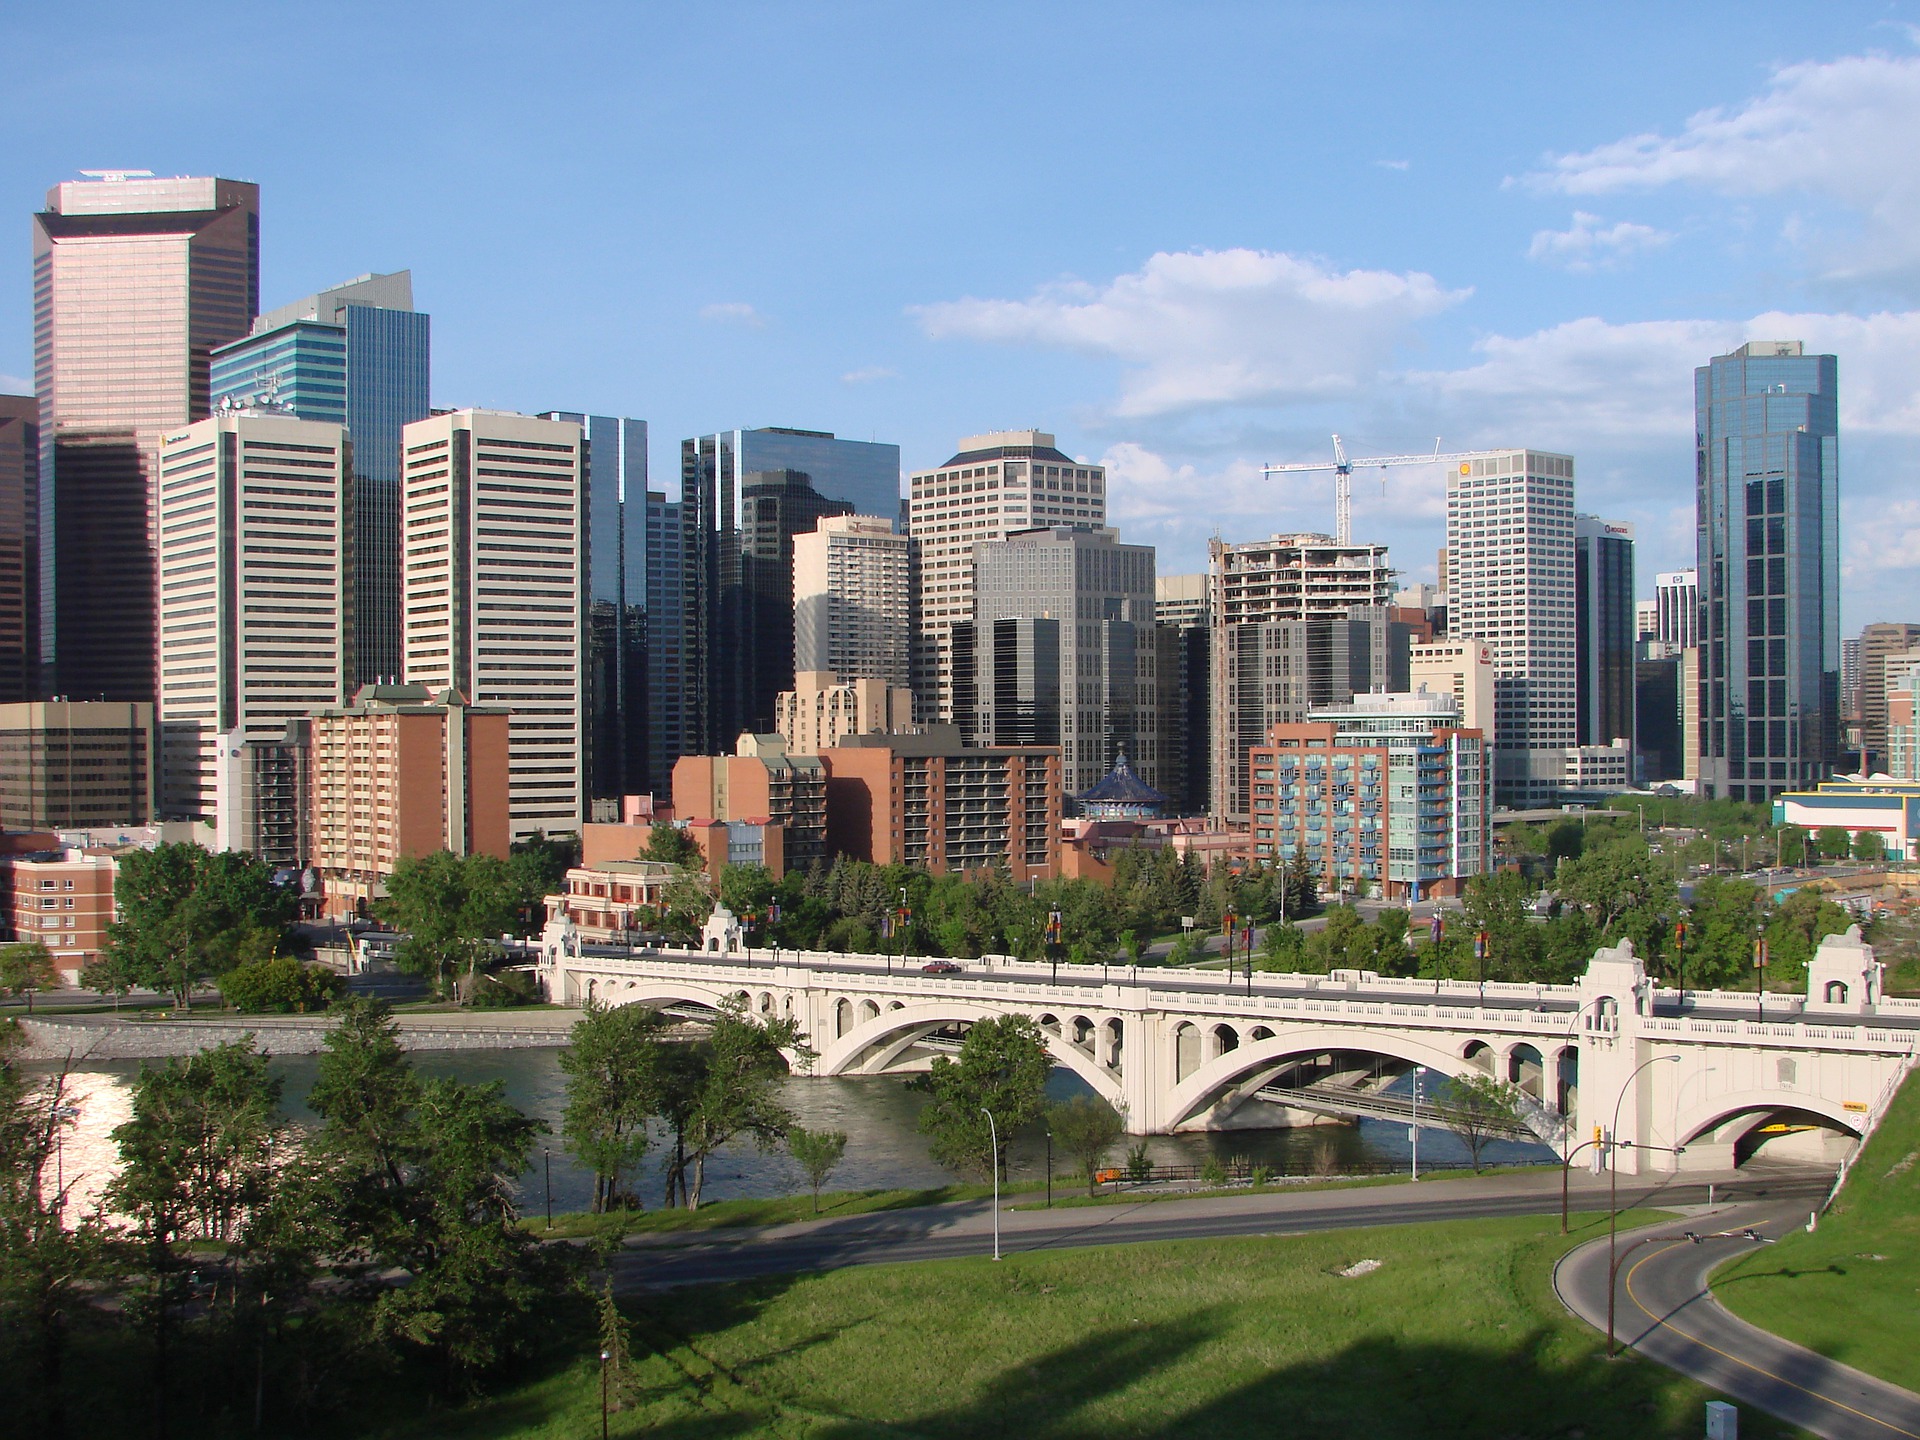 De 178 meter lange Centre Street Bridge in Calgary. Foto: Pixabay.